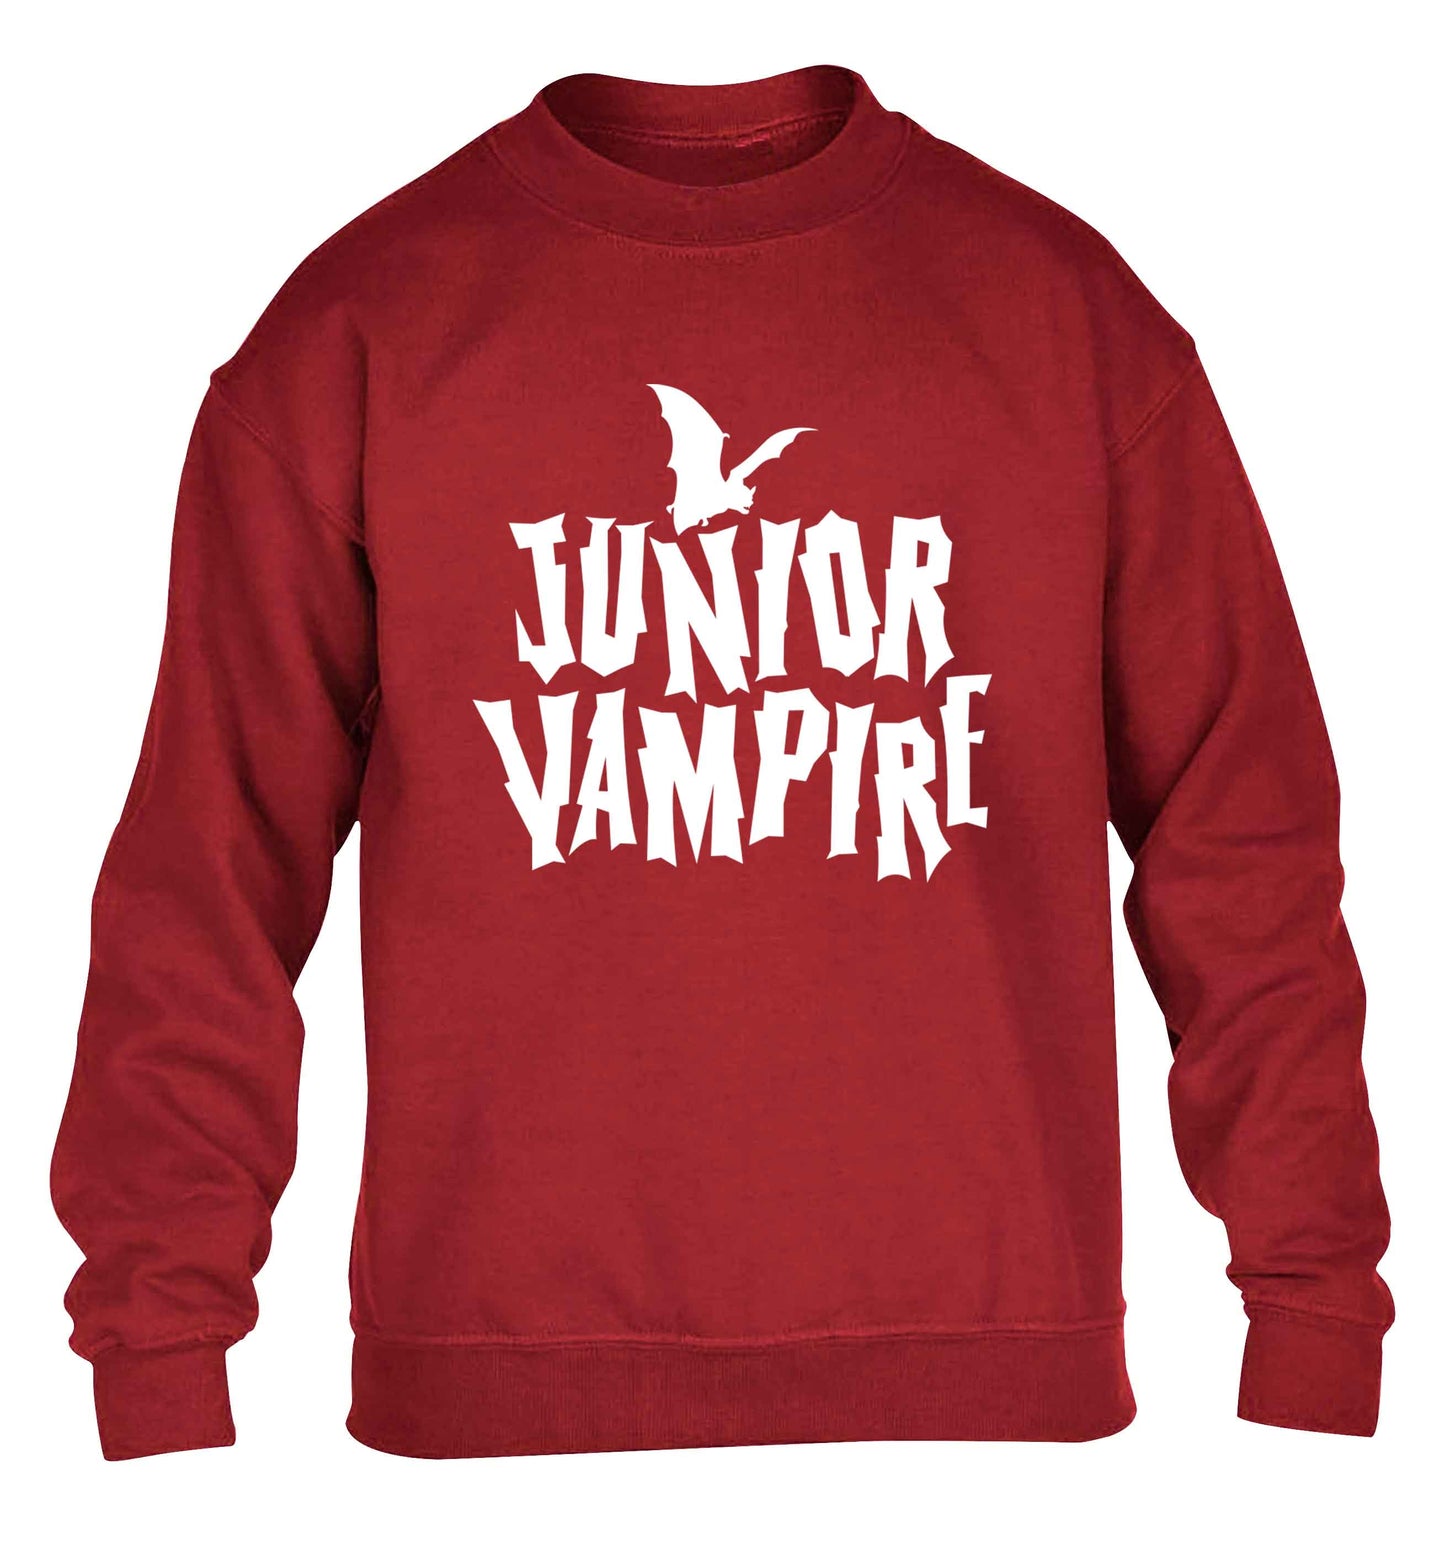 Junior vampire children's grey sweater 12-13 Years